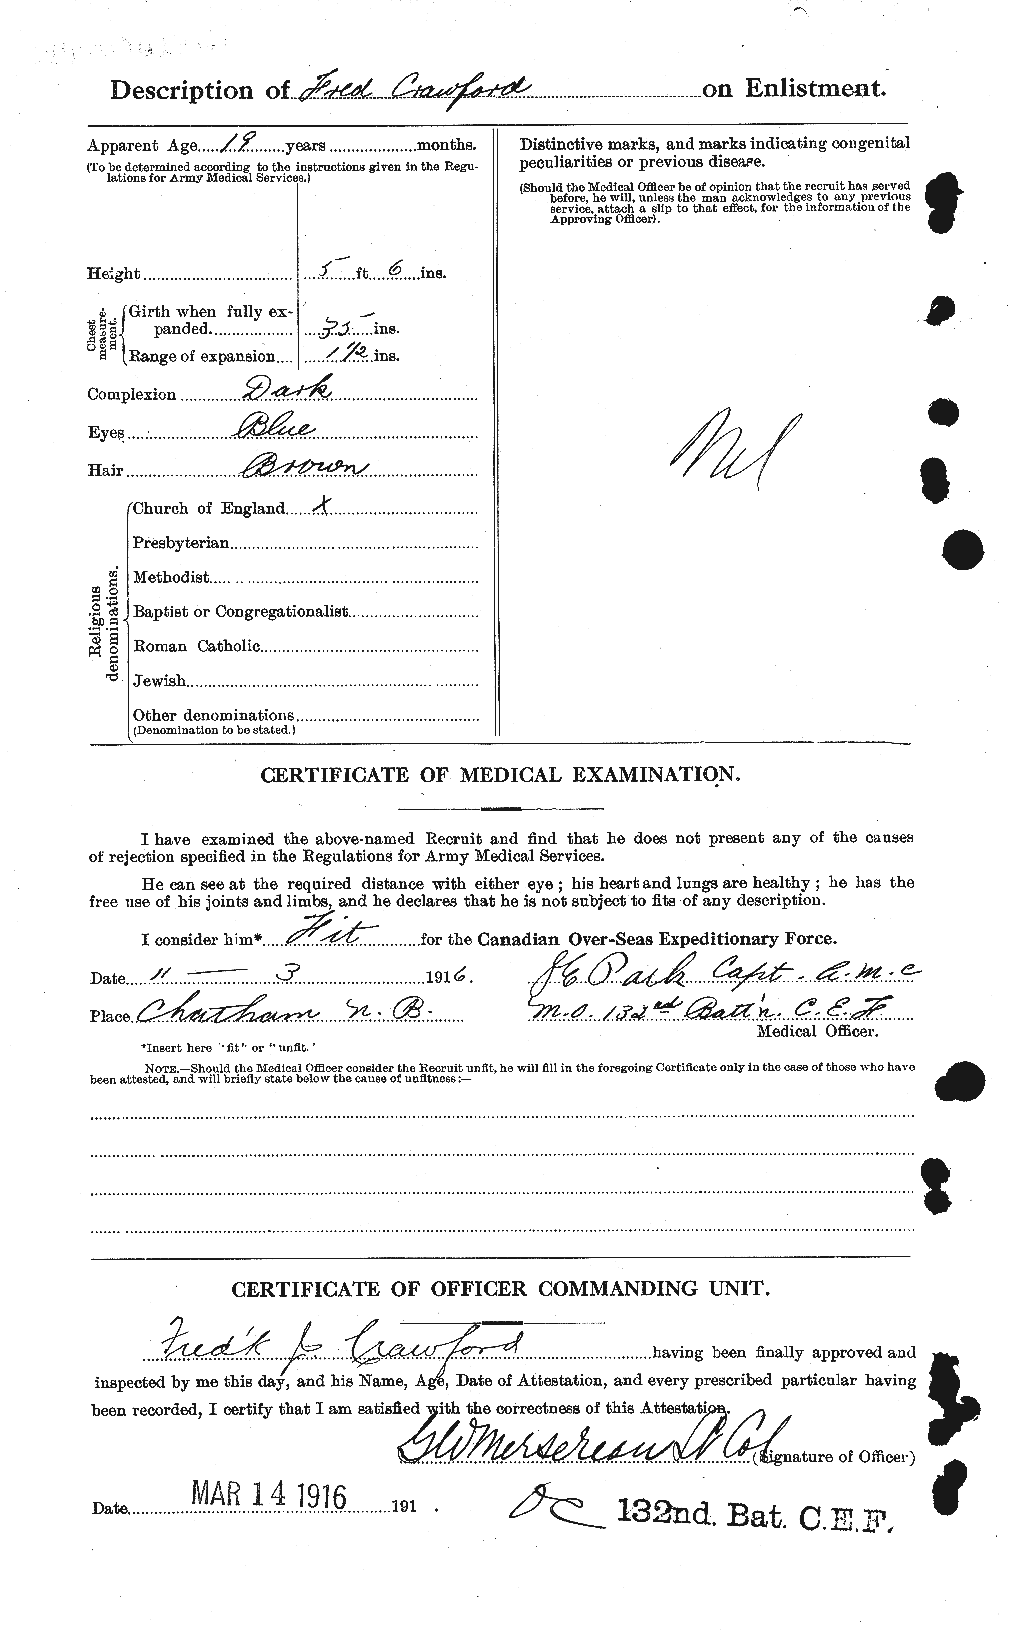 Dossiers du Personnel de la Première Guerre mondiale - CEC 060726b